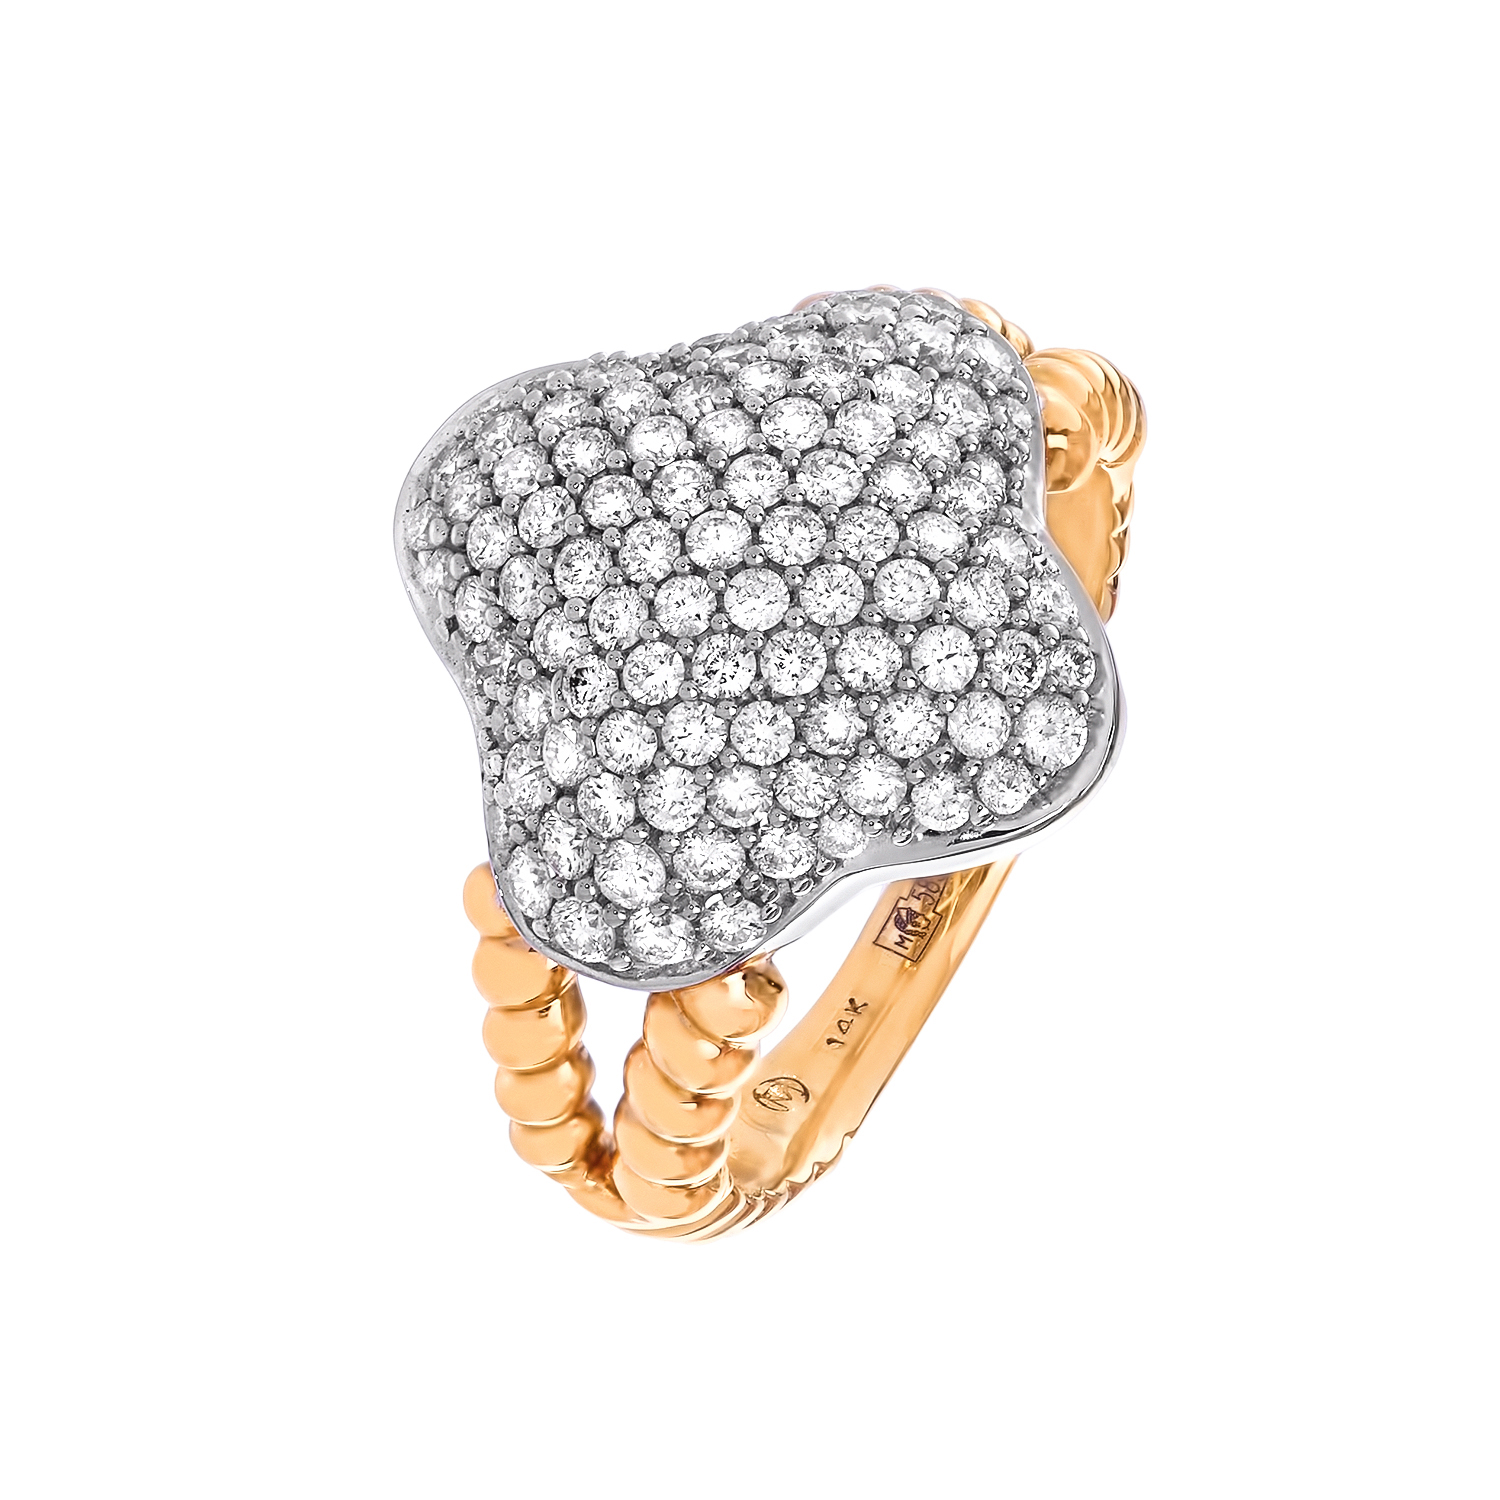 Усыпанное бриллиантами кольцо в желтом золоте  от магазина LunaLu